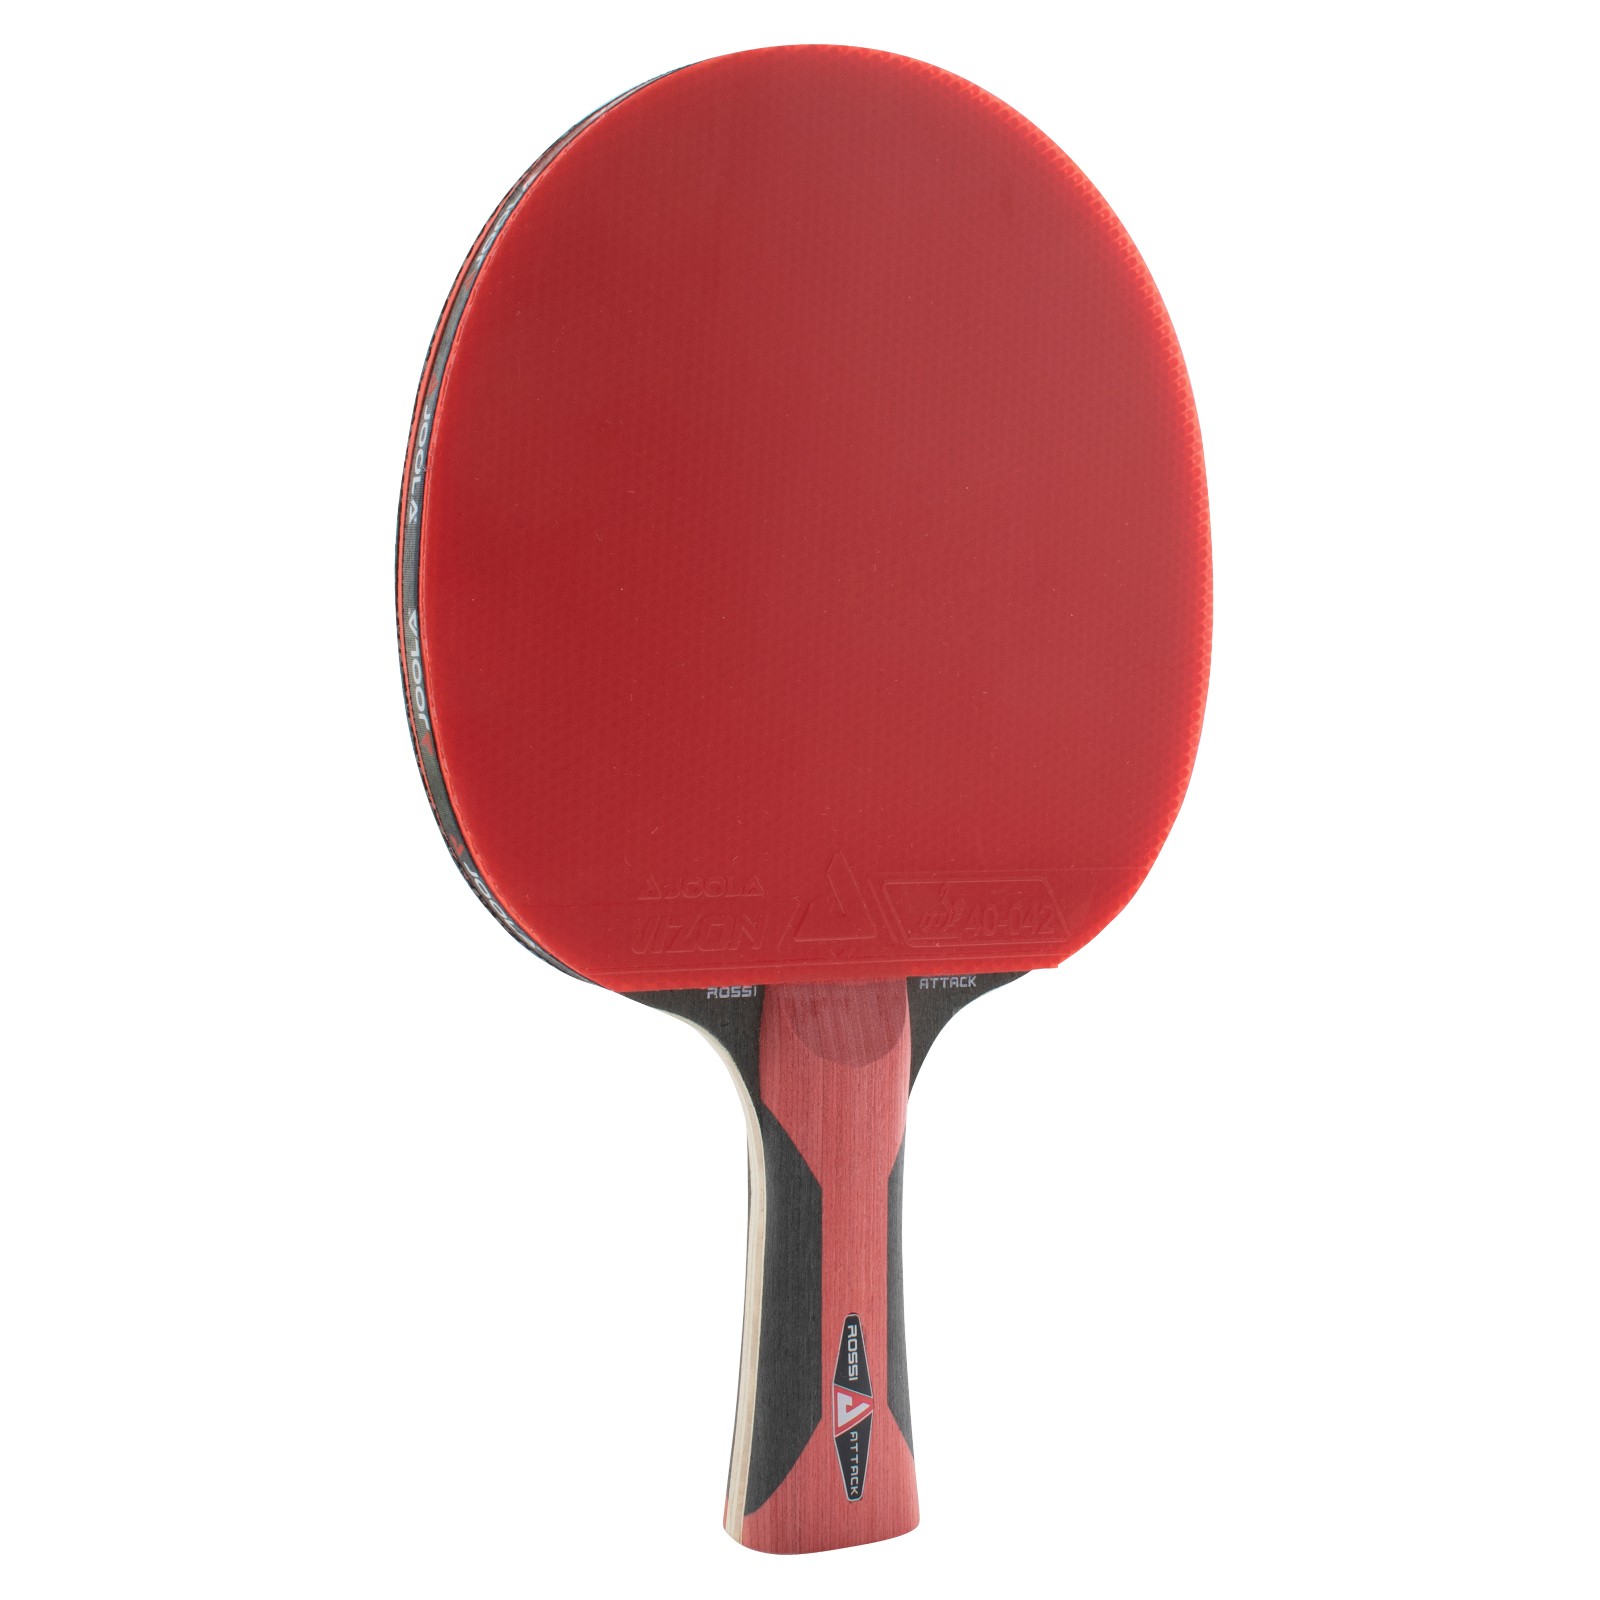 La raquette de ping-pong acheter en ligne